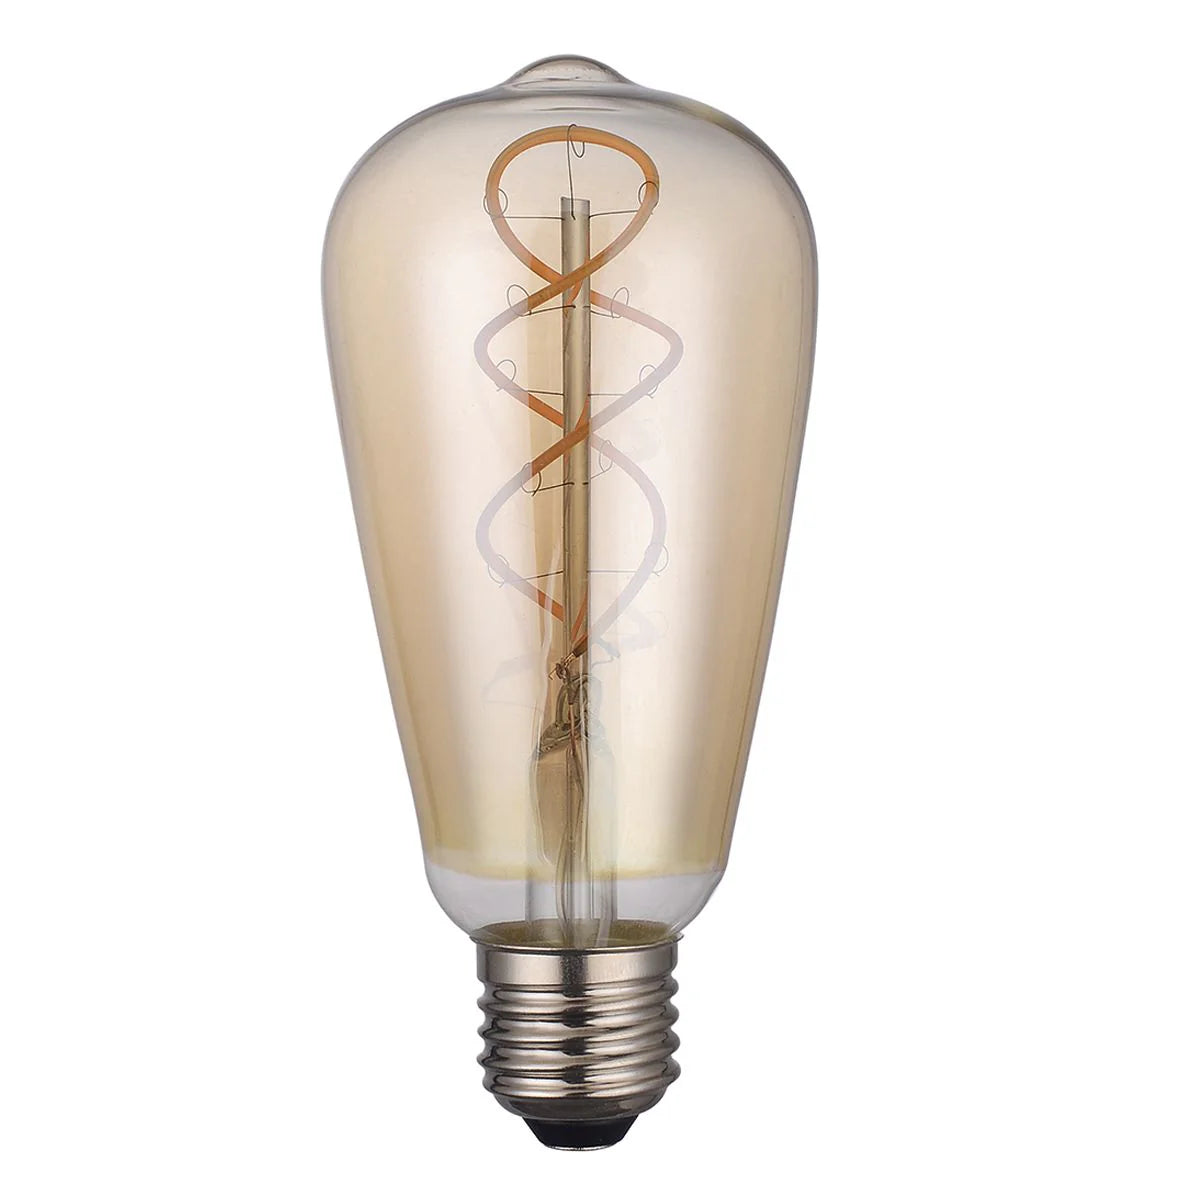 Smart LED light bulbs for sale online